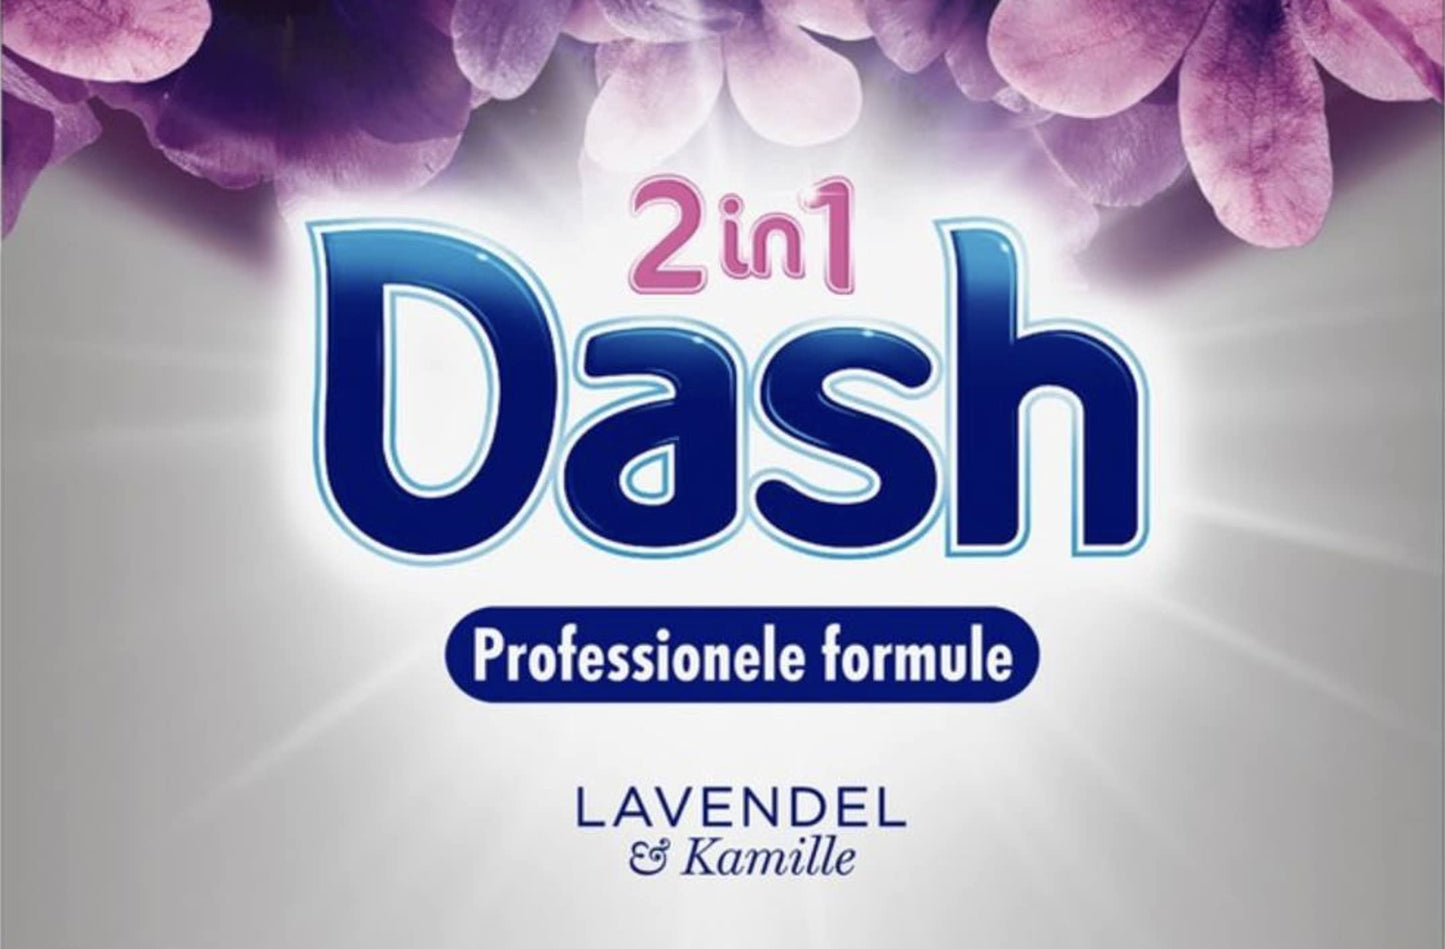 Dash Waspoeder Lenor 2in1 Lavendel & Kamille 7,15kg, VoordeligInslaan.nl